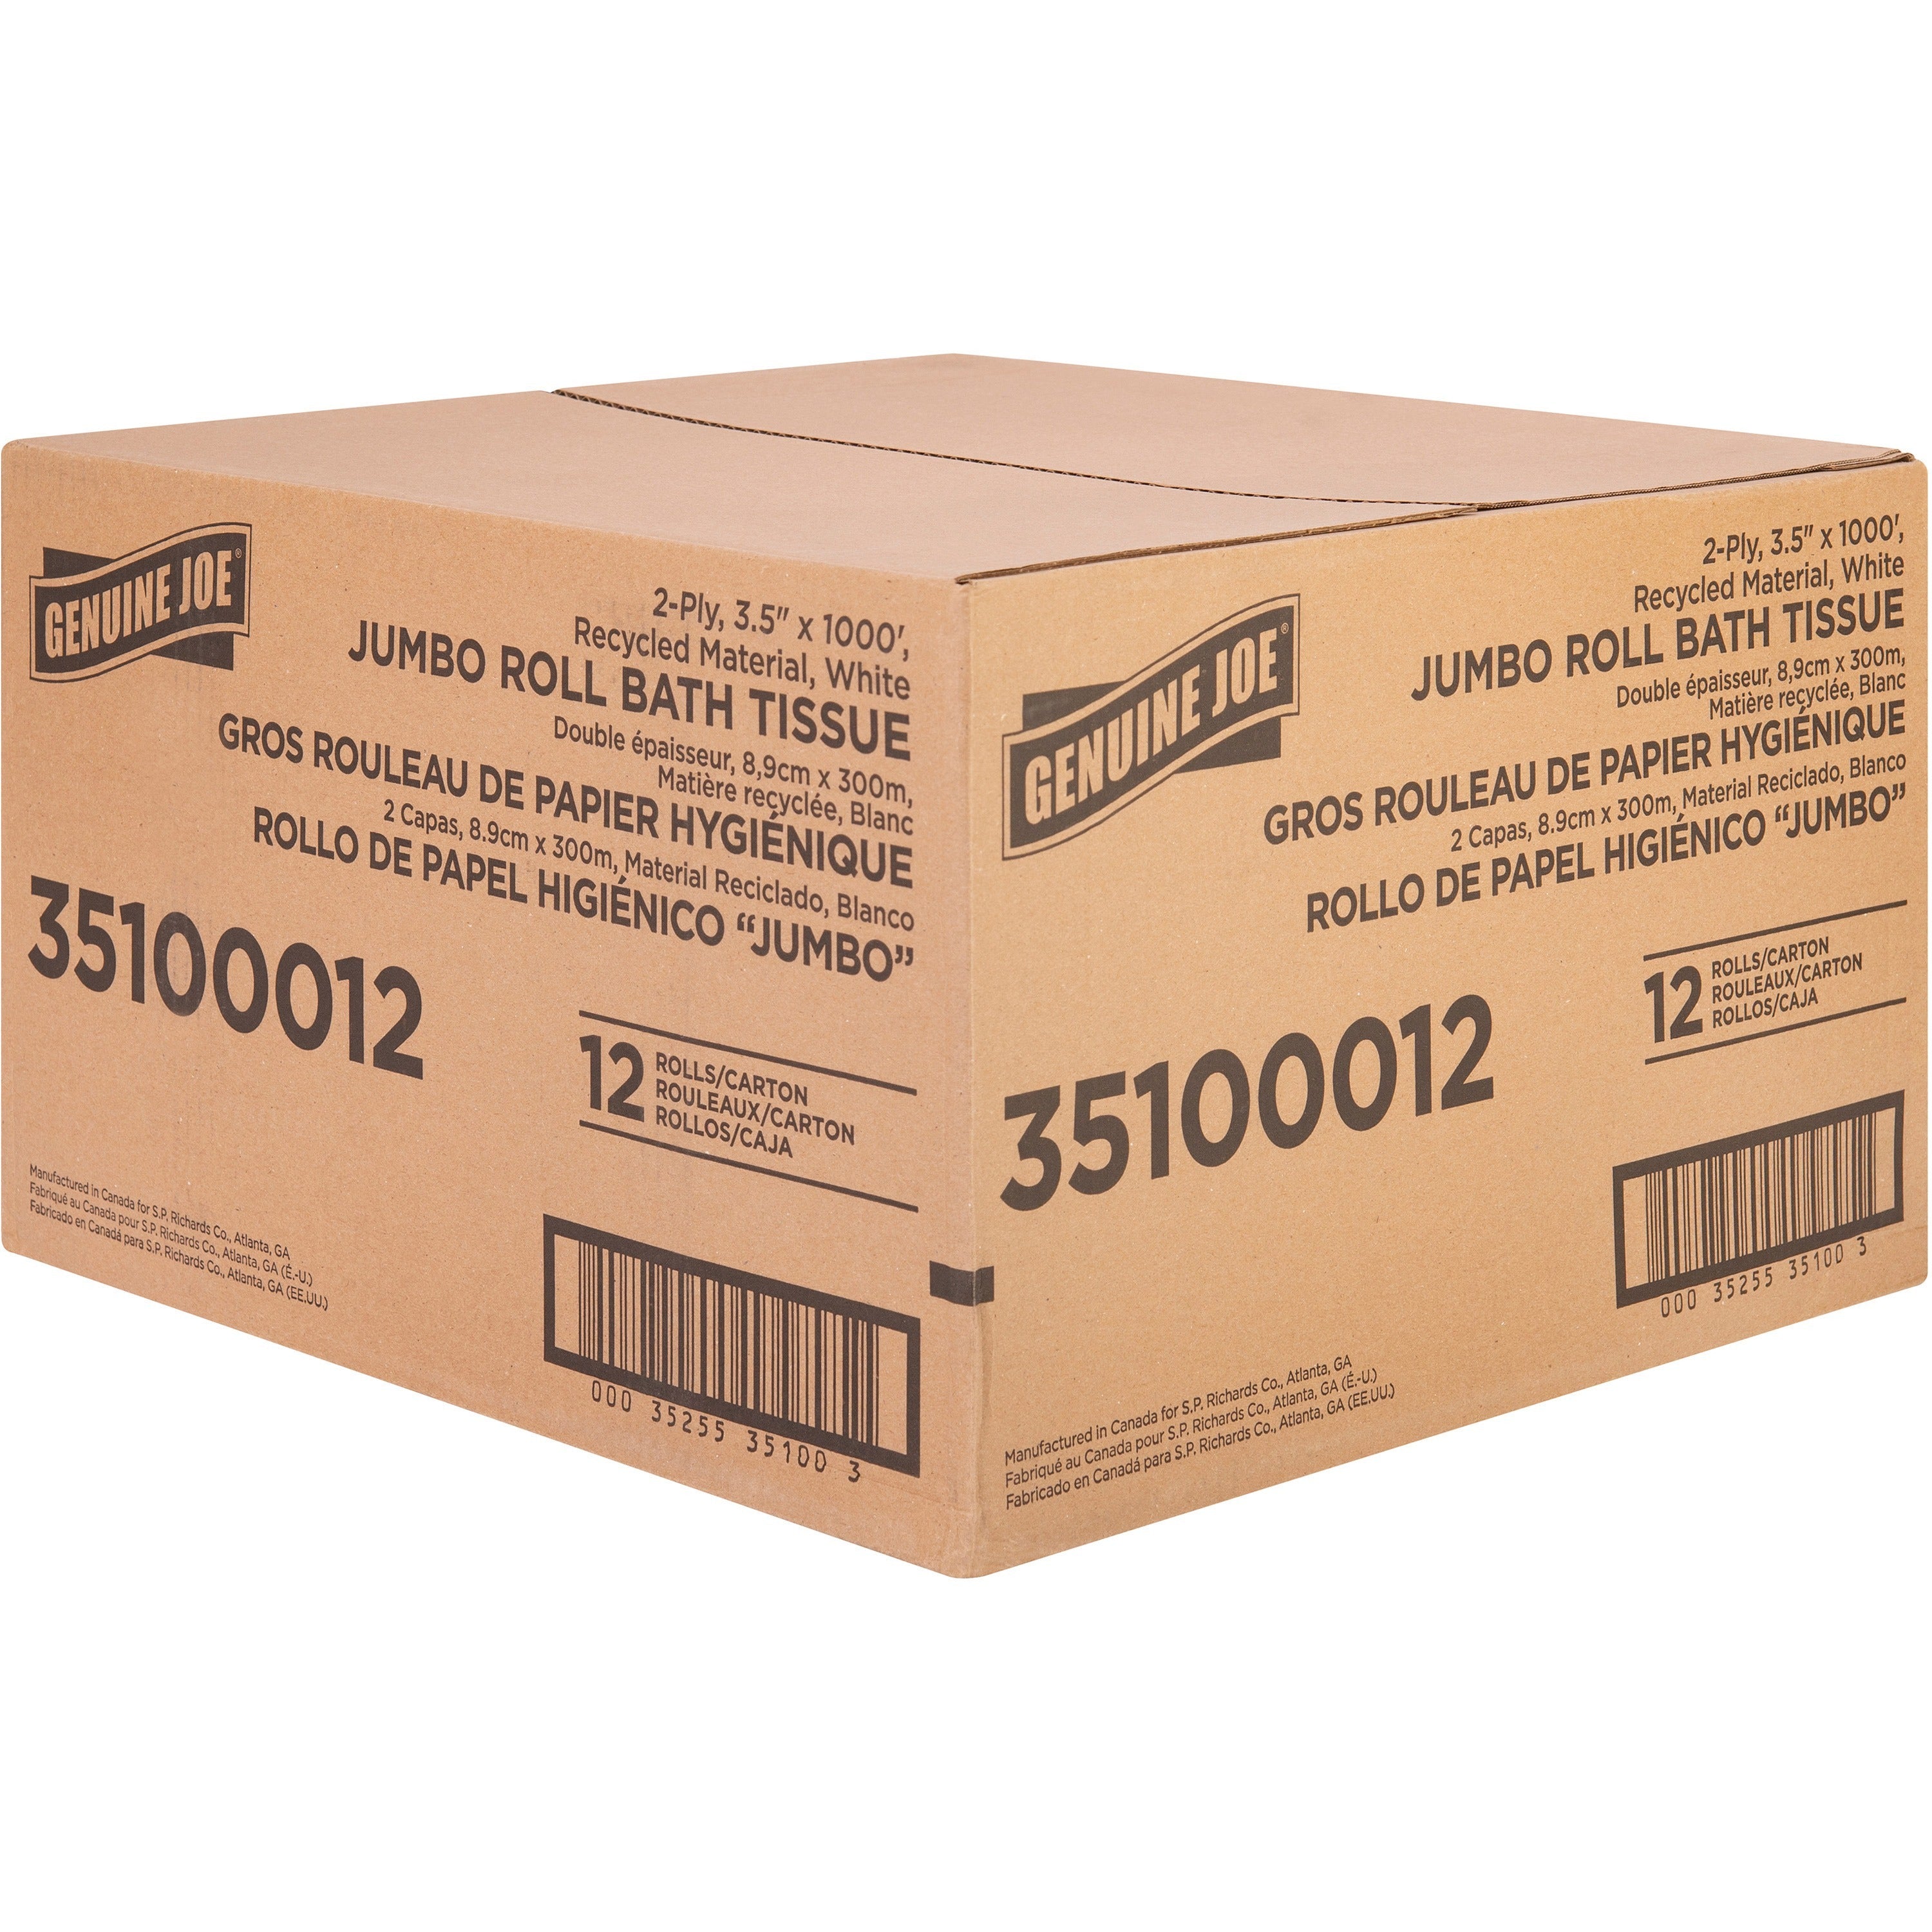 genuine-joe-jumbo-jr-dispenser-bath-tissue-roll-2-ply-350-x-1000-ft-888-roll-diameter-white-fiber-sewer-safe-septic-safe-for-bathroom-12-carton_gjo35100012 - 4